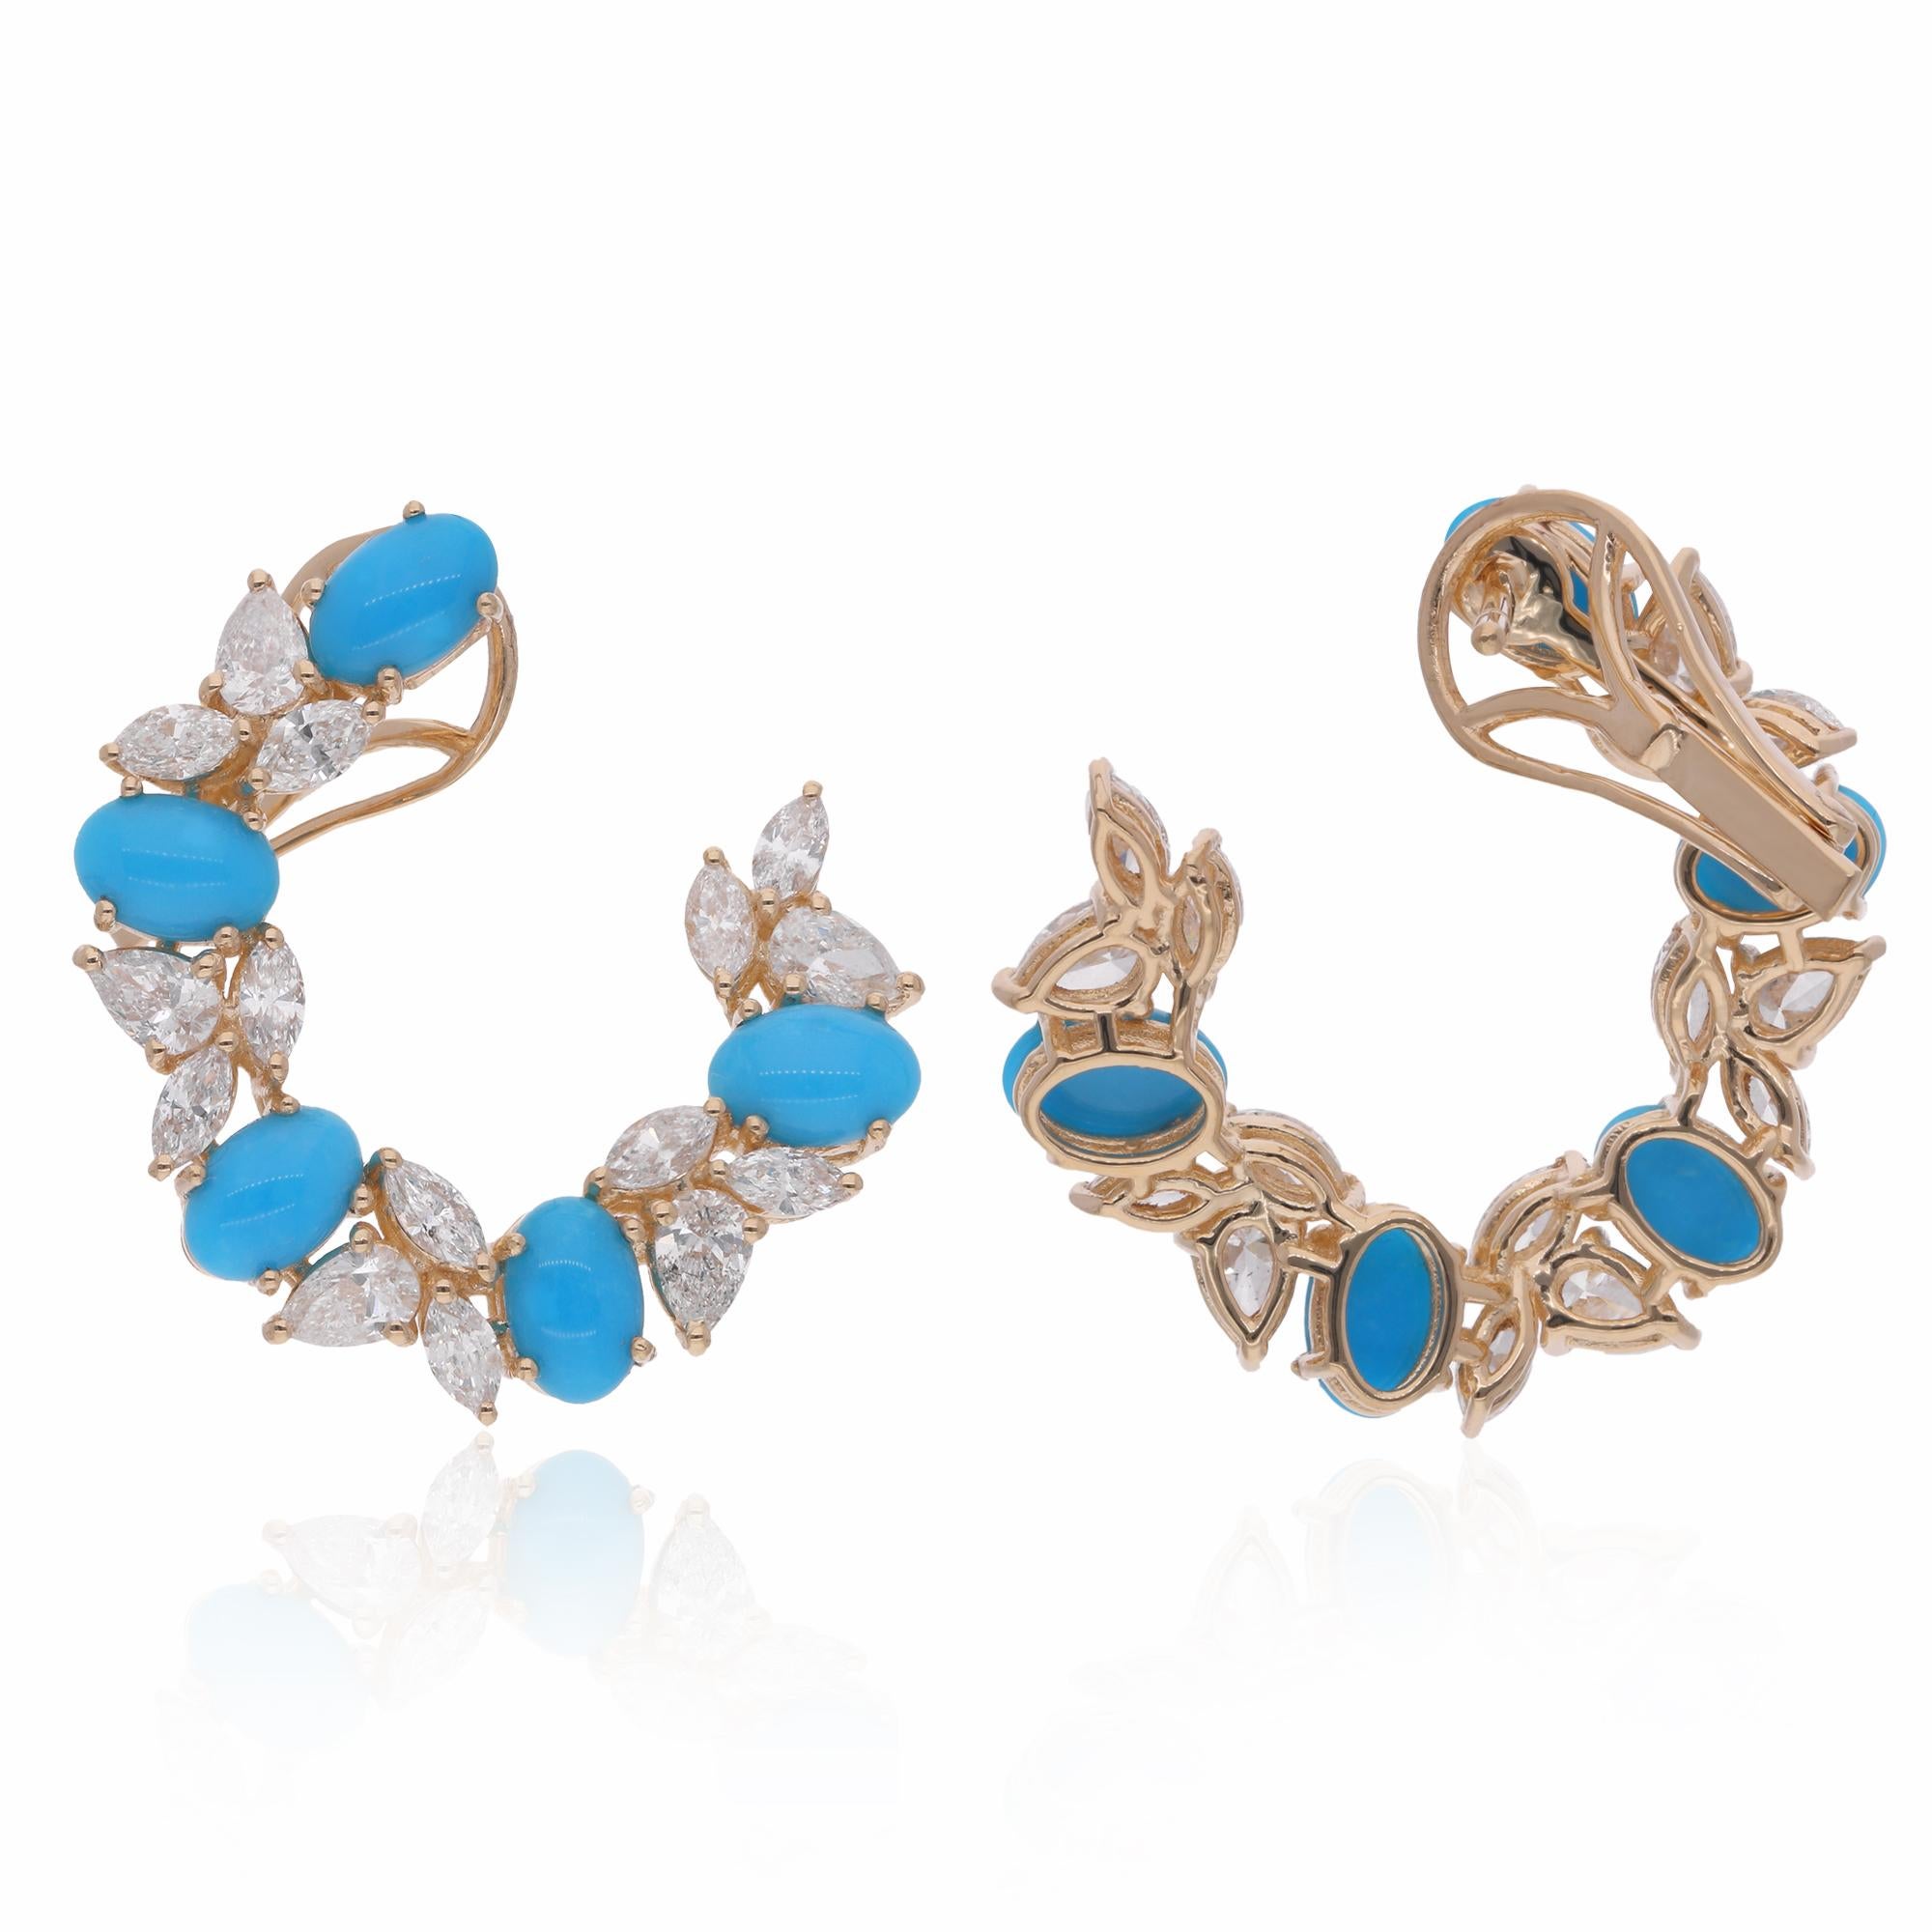 Tauchen Sie ein in die bezaubernde Schönheit unserer ovalen Türkis-Edelstein-Ohrringe, die mit Diamanten verziert und mit exquisiter Kunstfertigkeit in 18 Karat Gelbgold gefertigt sind. Diese Ohrringe sind mehr als nur ein Accessoire, sie sind ein